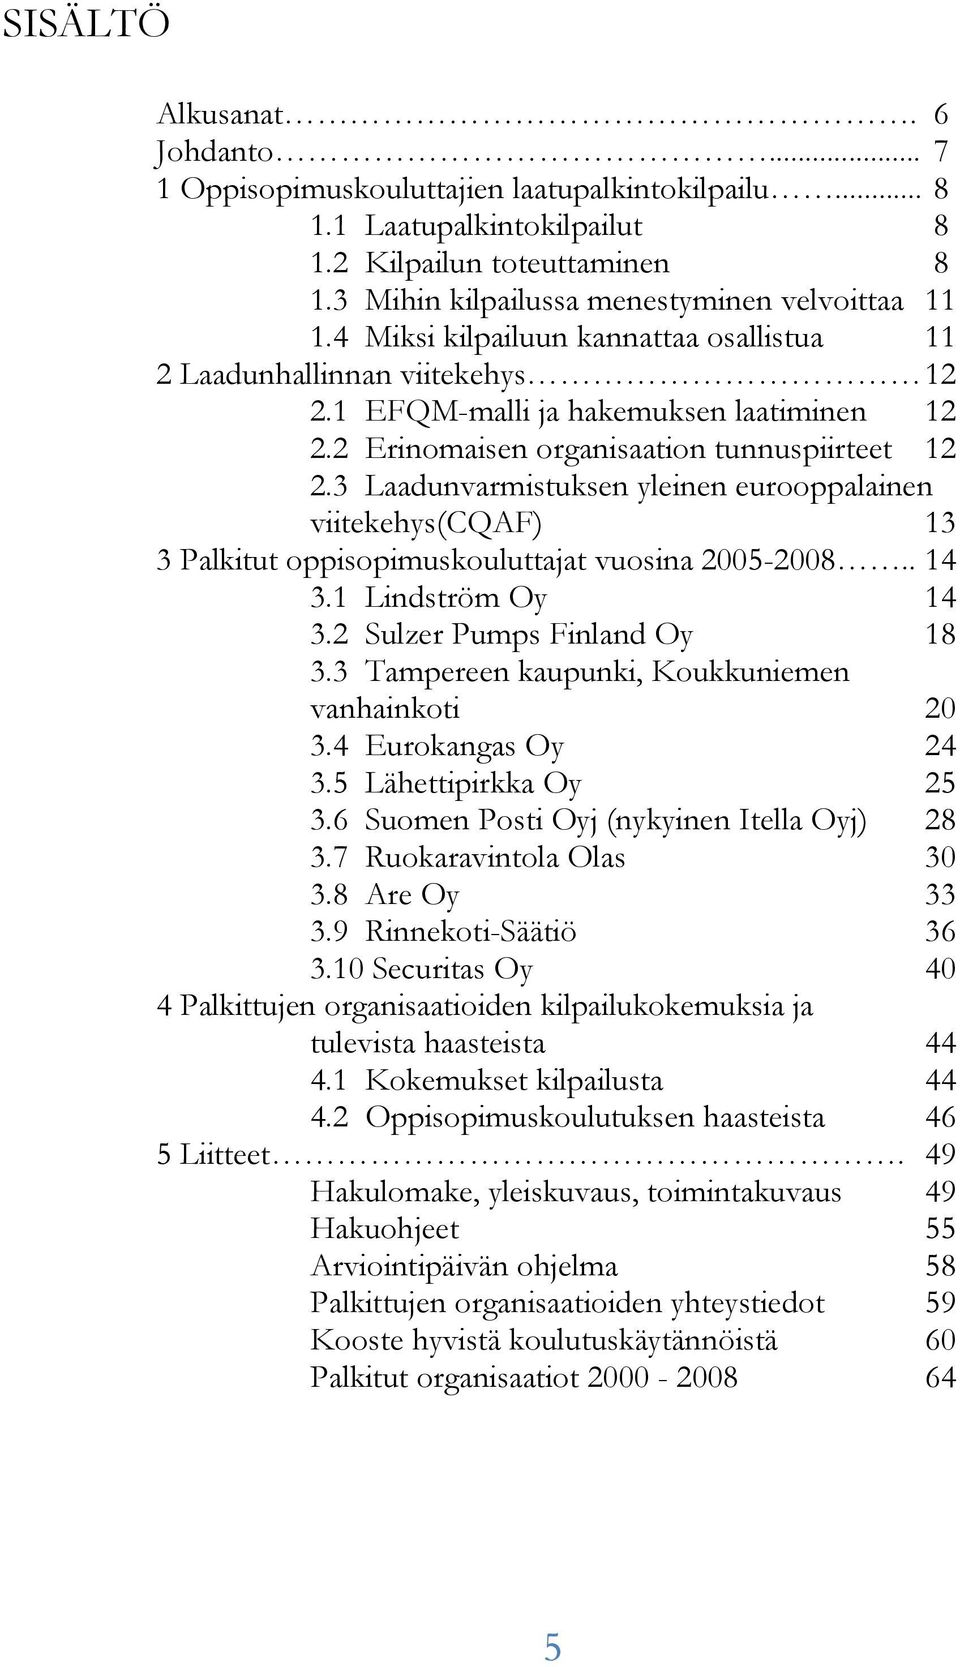 3 Laadunvarmistuksen yleinen eurooppalainen viitekehys(cqaf) 13 3 Palkitut oppisopimuskouluttajat vuosina 2005-2008.. 14 3.1 Lindström Oy 14 3.2 Sulzer Pumps Finland Oy 18 3.